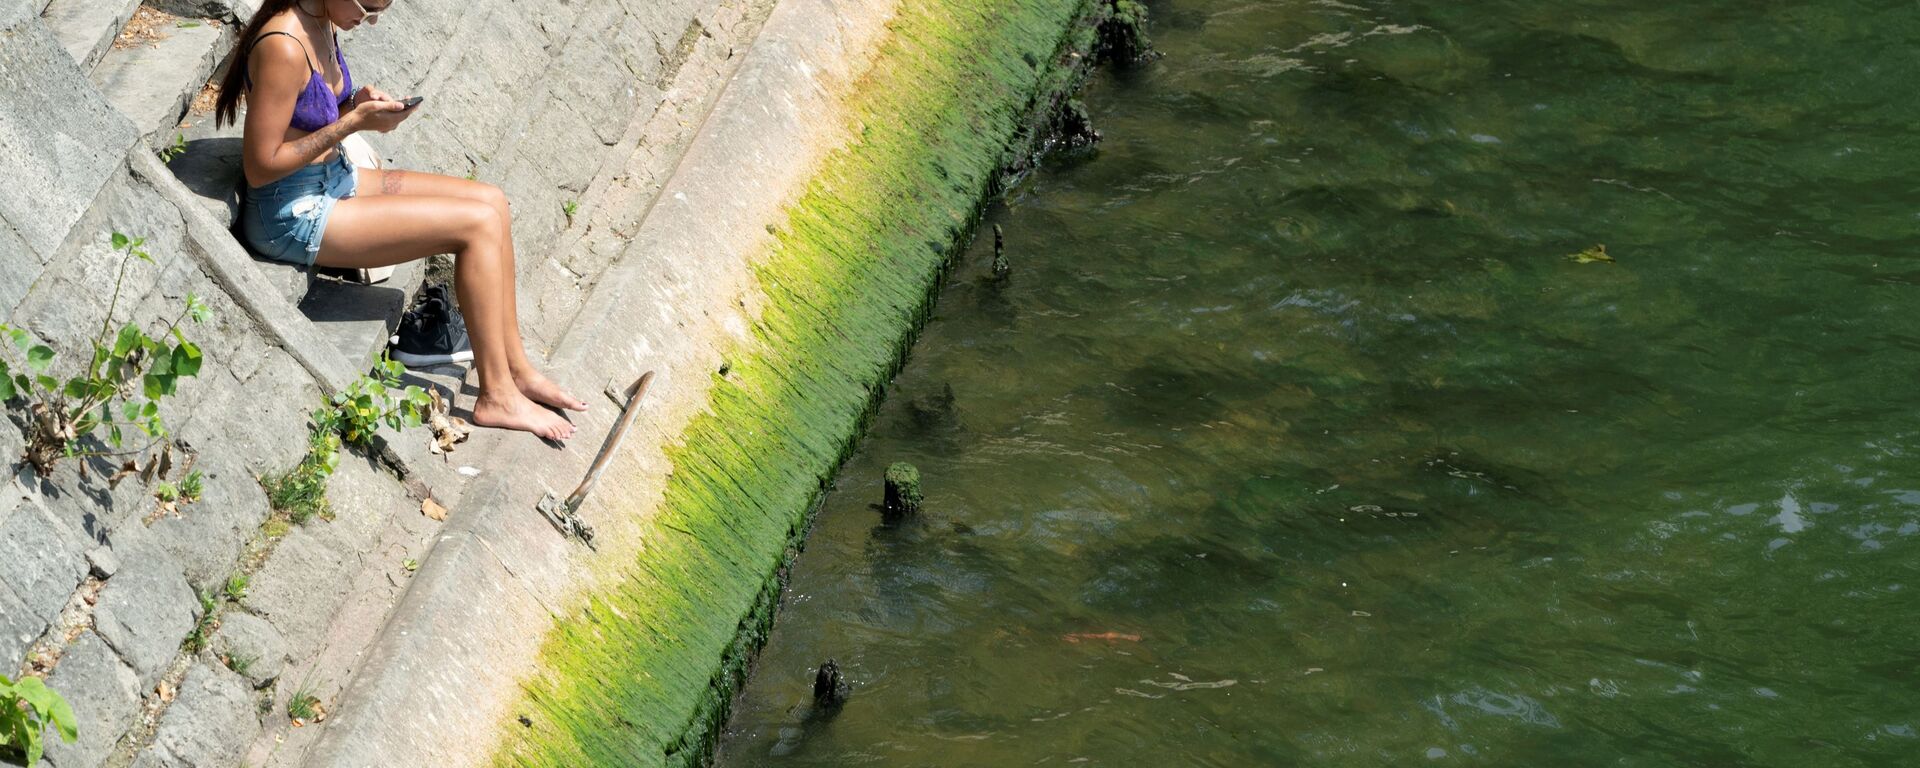 「汚くて臭い」 フランス人は2024年夏季五輪までにセーヌ川が泳げる川になることに疑問を呈している＝ル・フィガロ - Sputnik 日本, 1920, 29.07.2021